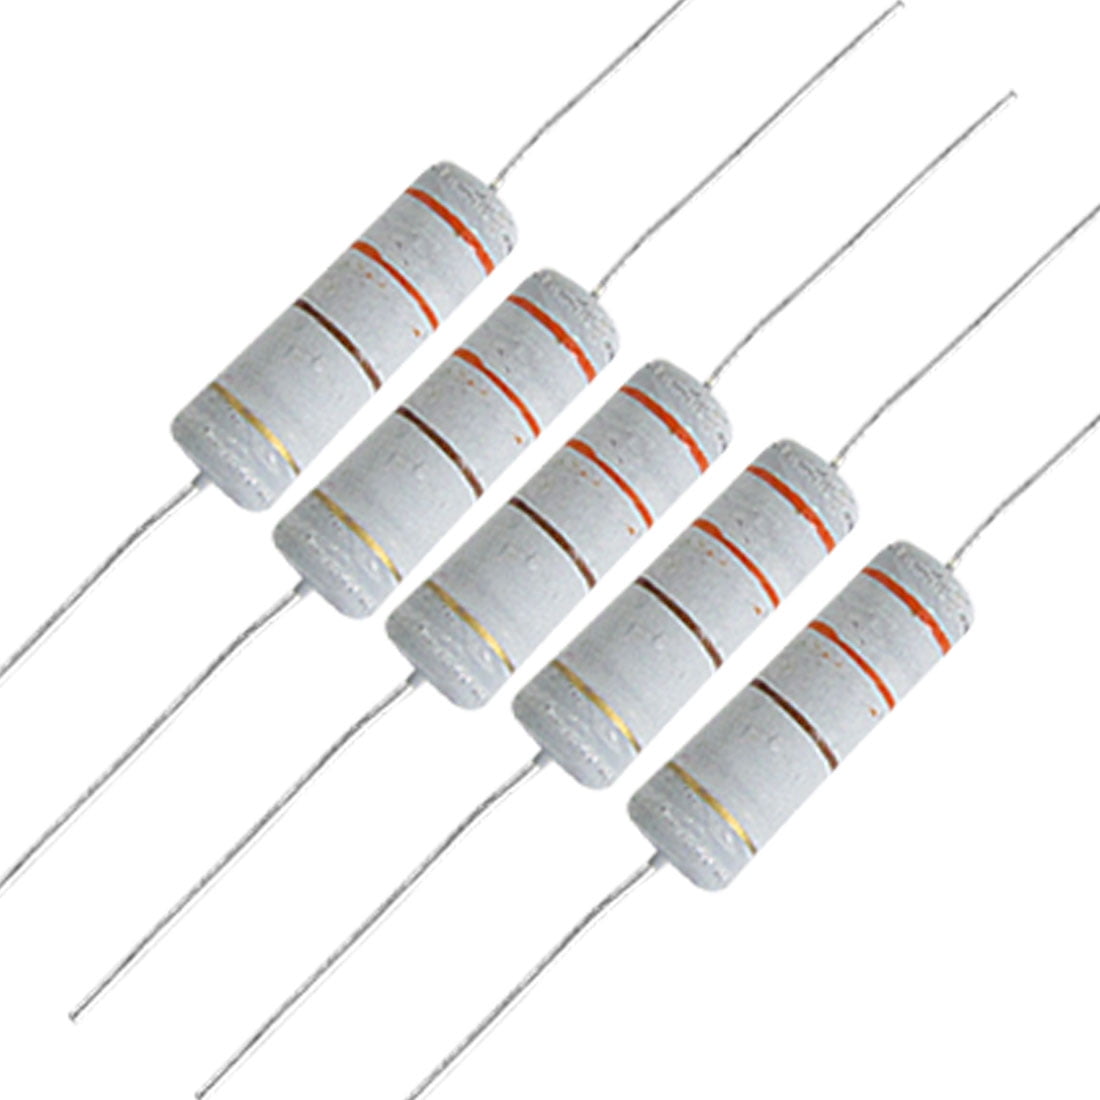 10PCS Metal Film Resistor 2W Watt 1% 0.33 ohm